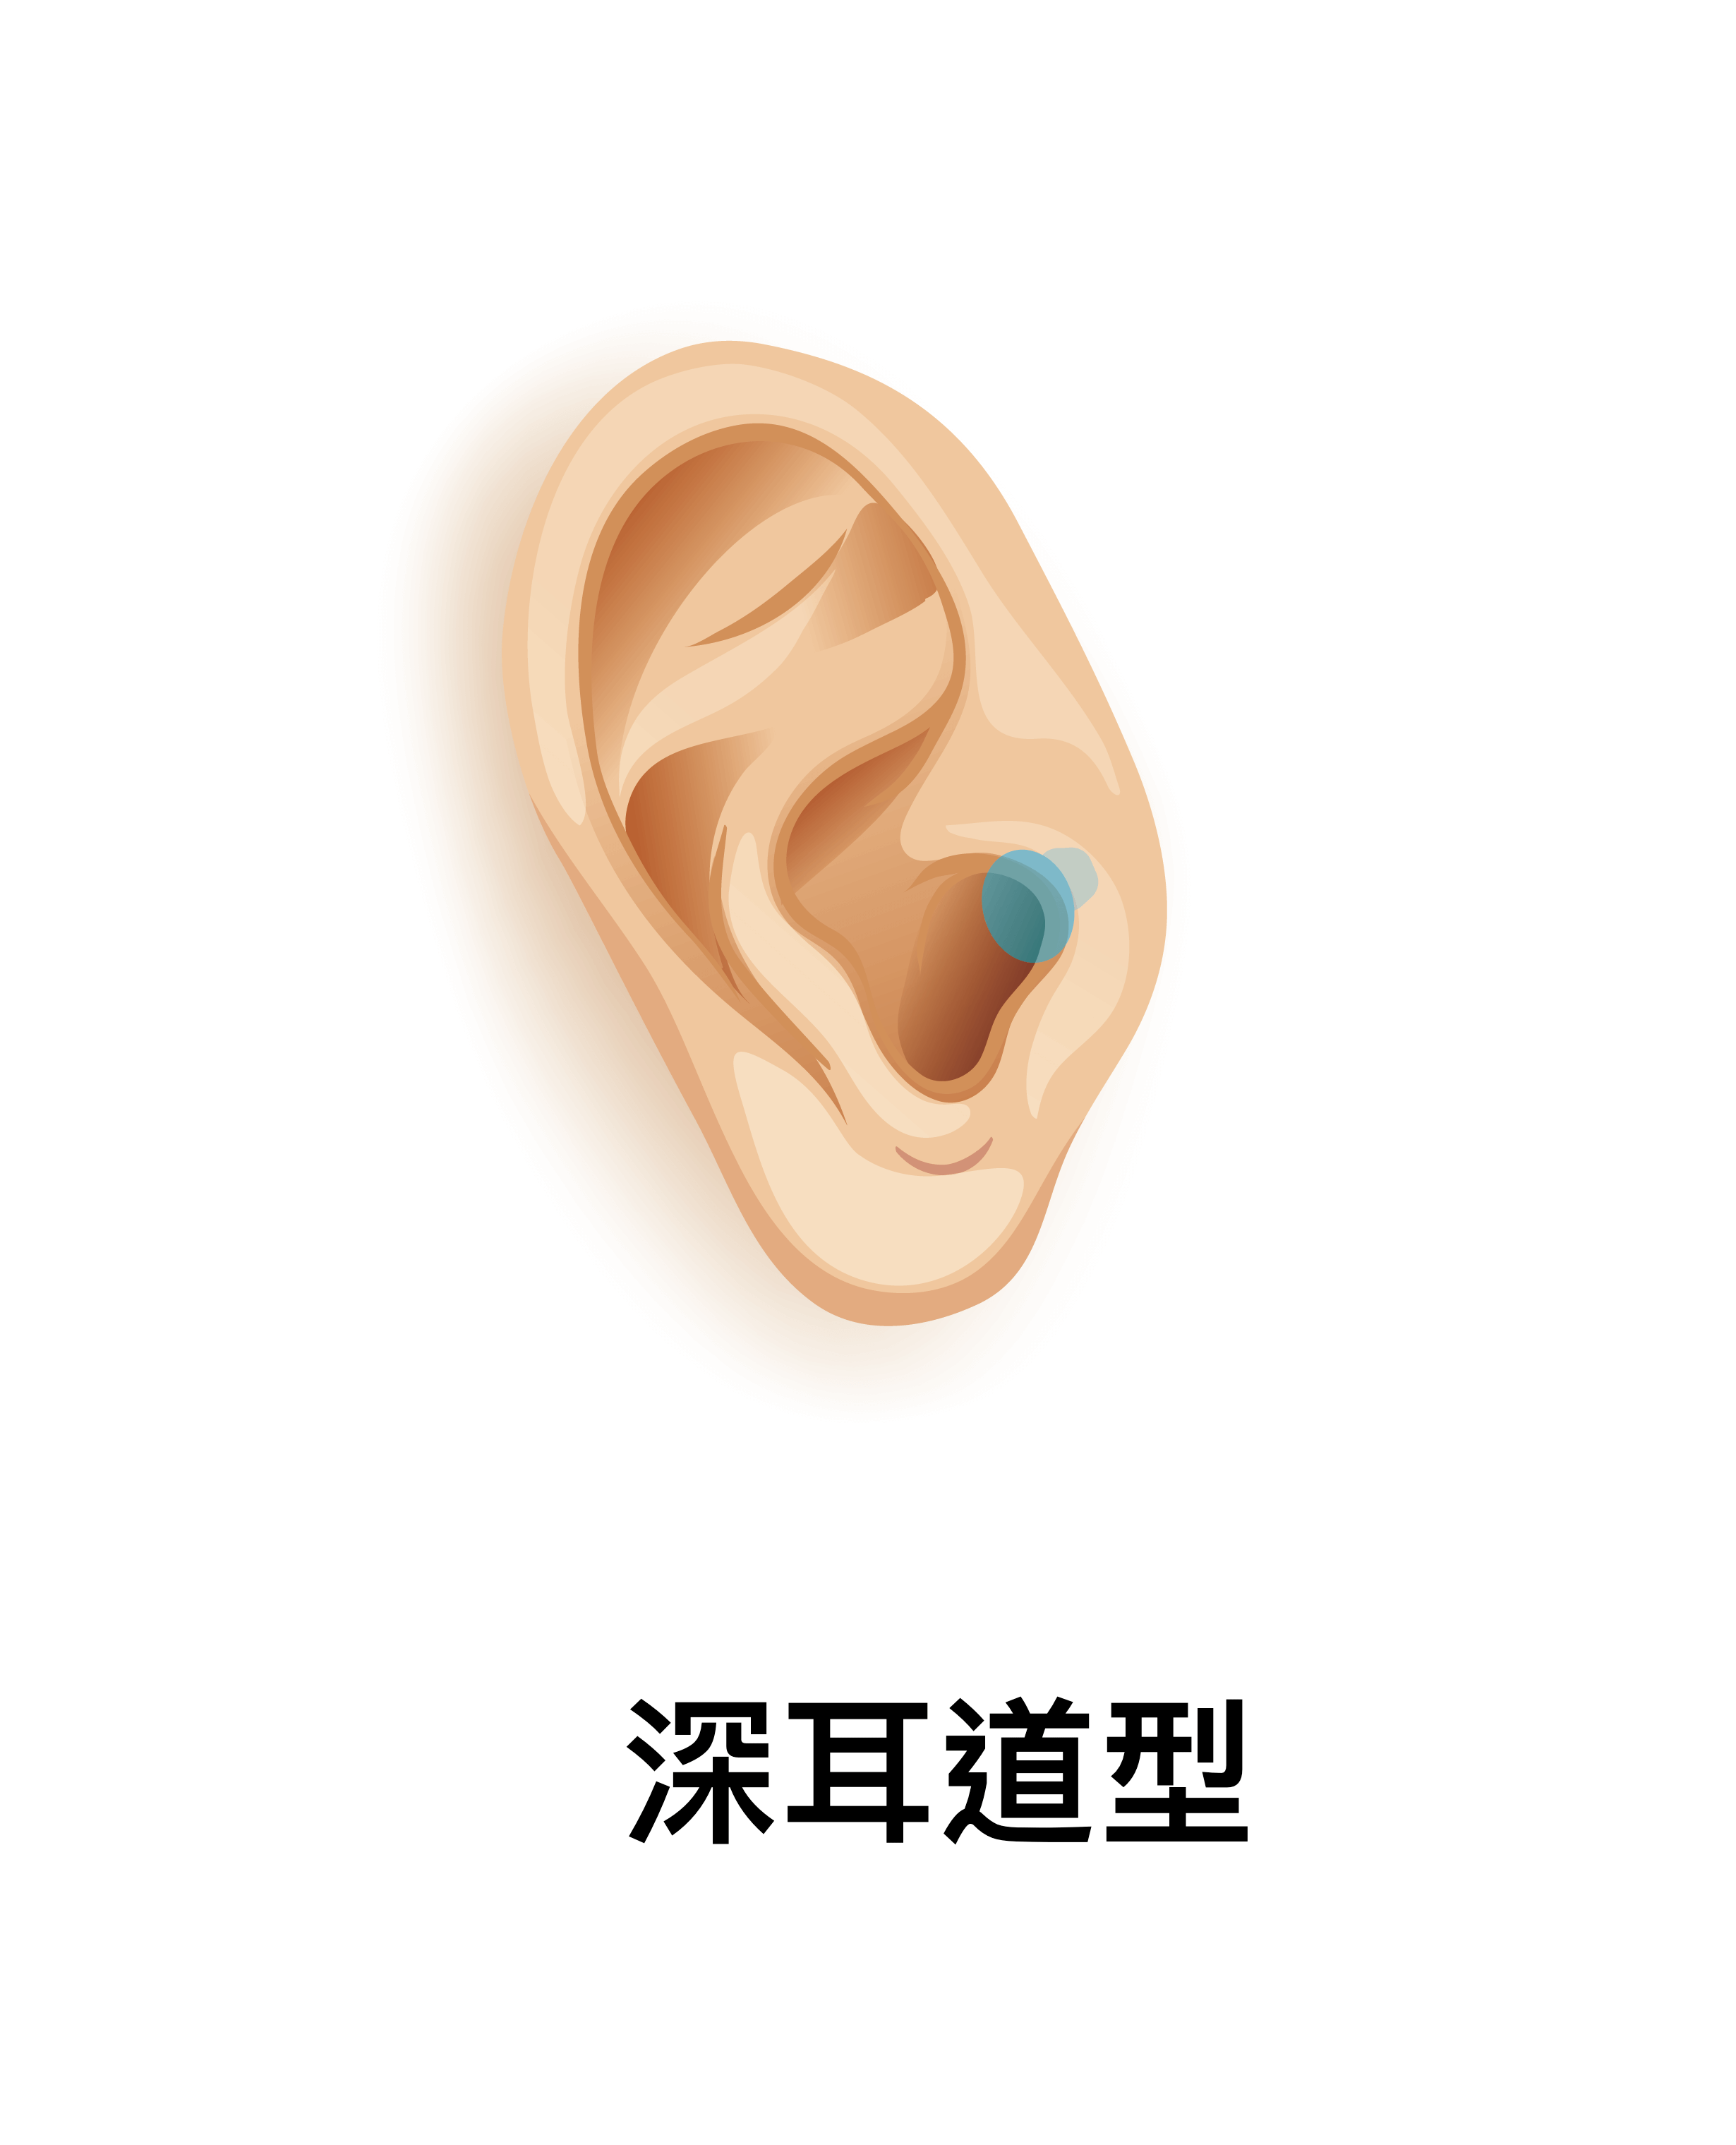 耳道内置接收型（IIC）及 深耳道内置接收型（CIC）助听器